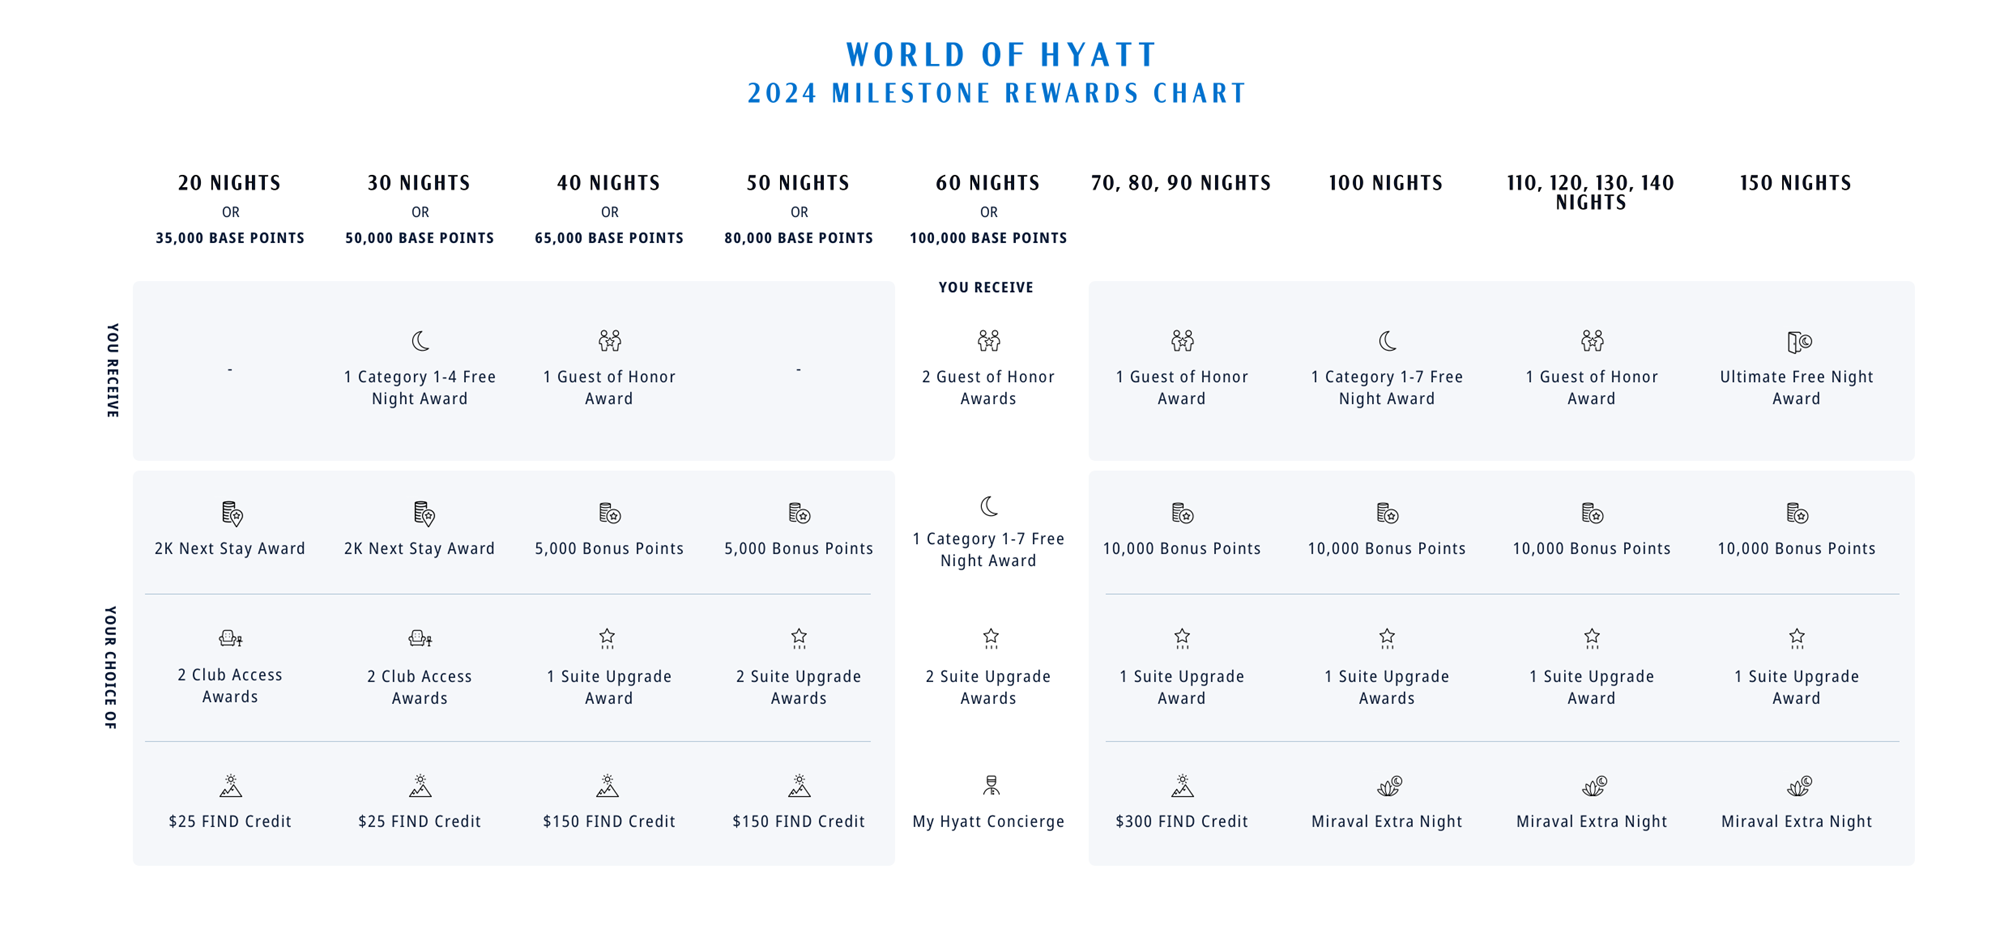 World of Hyatt Changes 2024 Milestone Rewards Chart